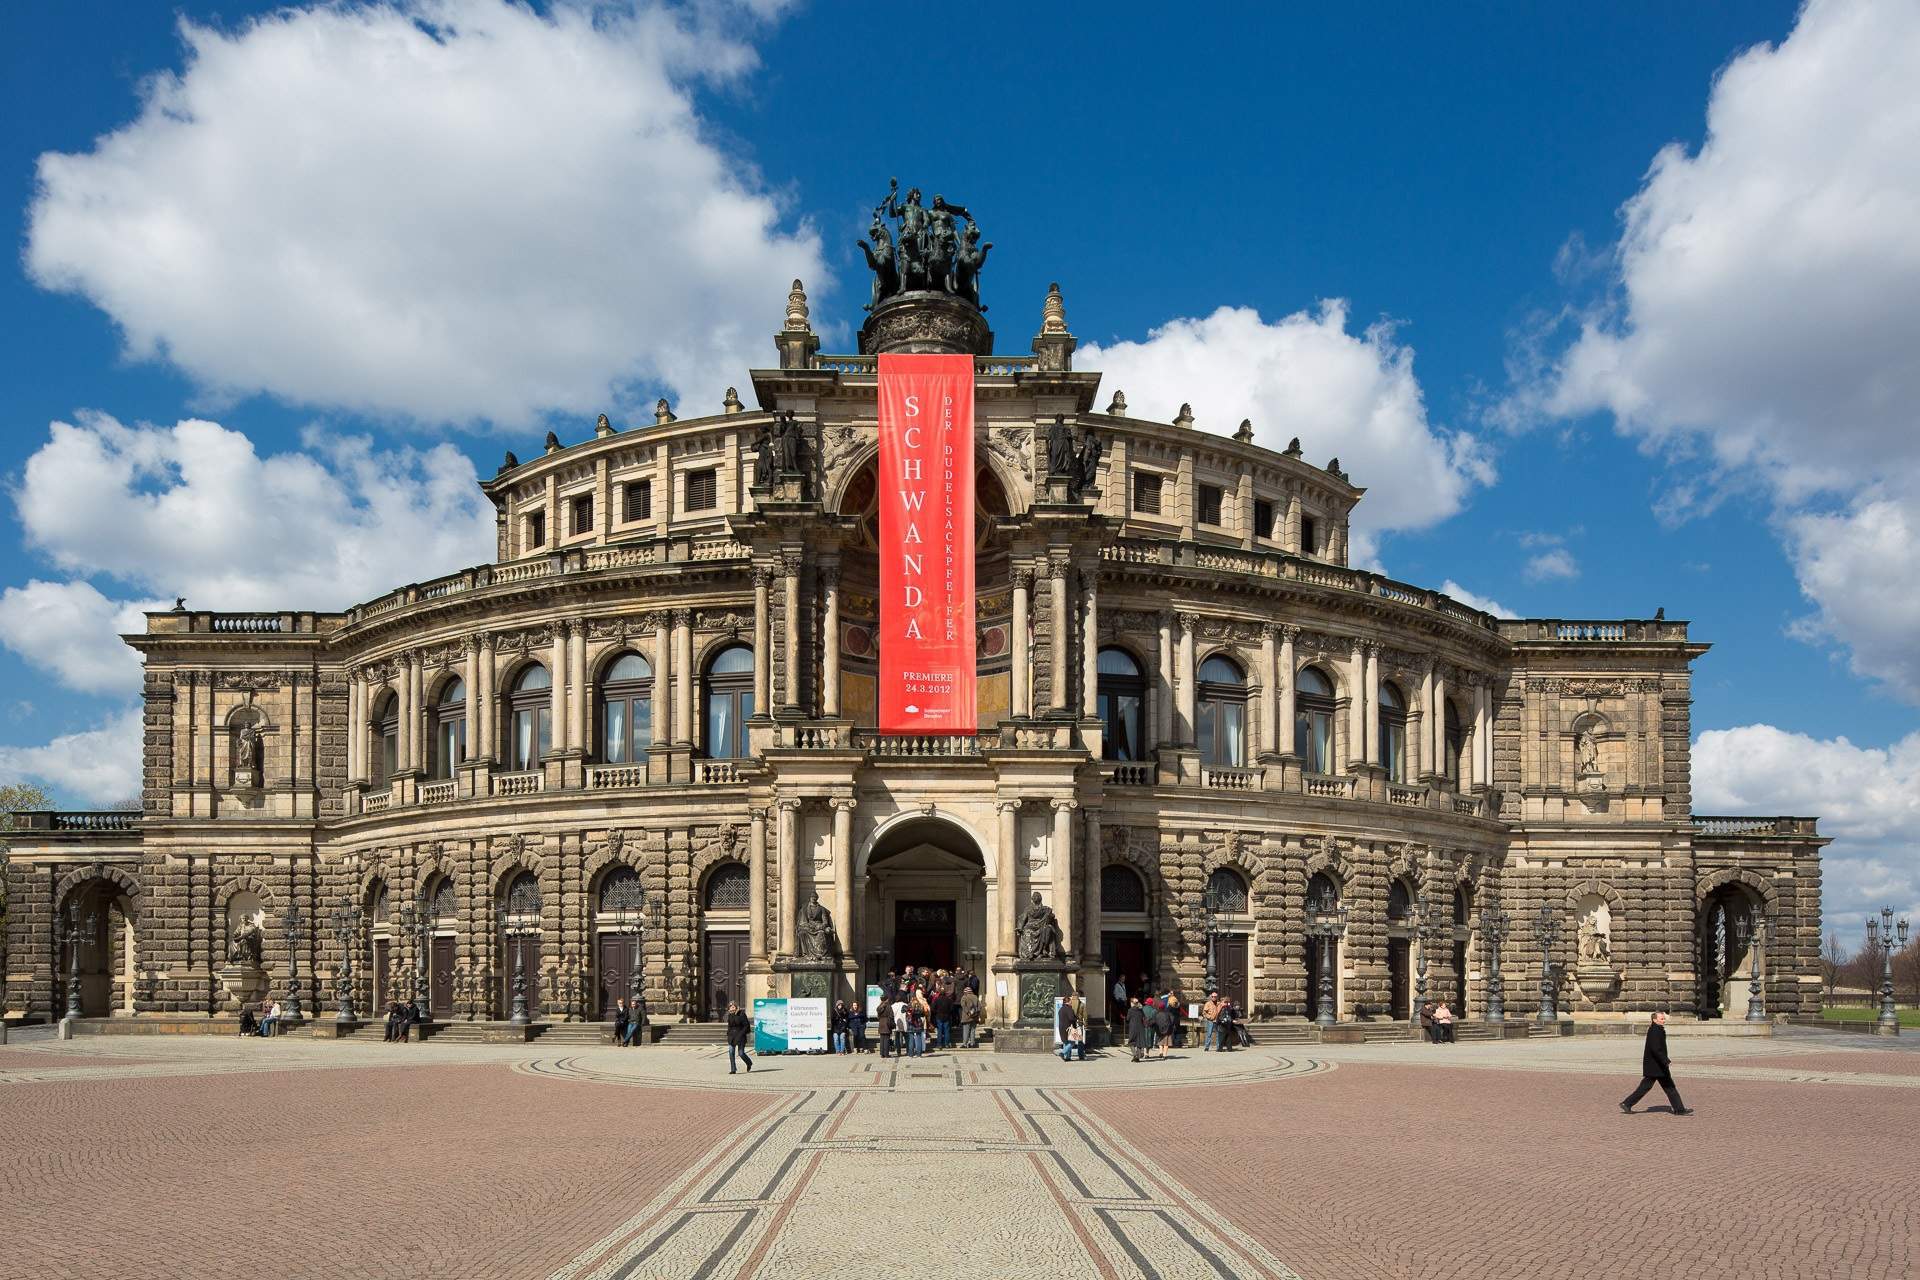 Busreis meerdaagse reis Dresden ©Frank from Pixabay